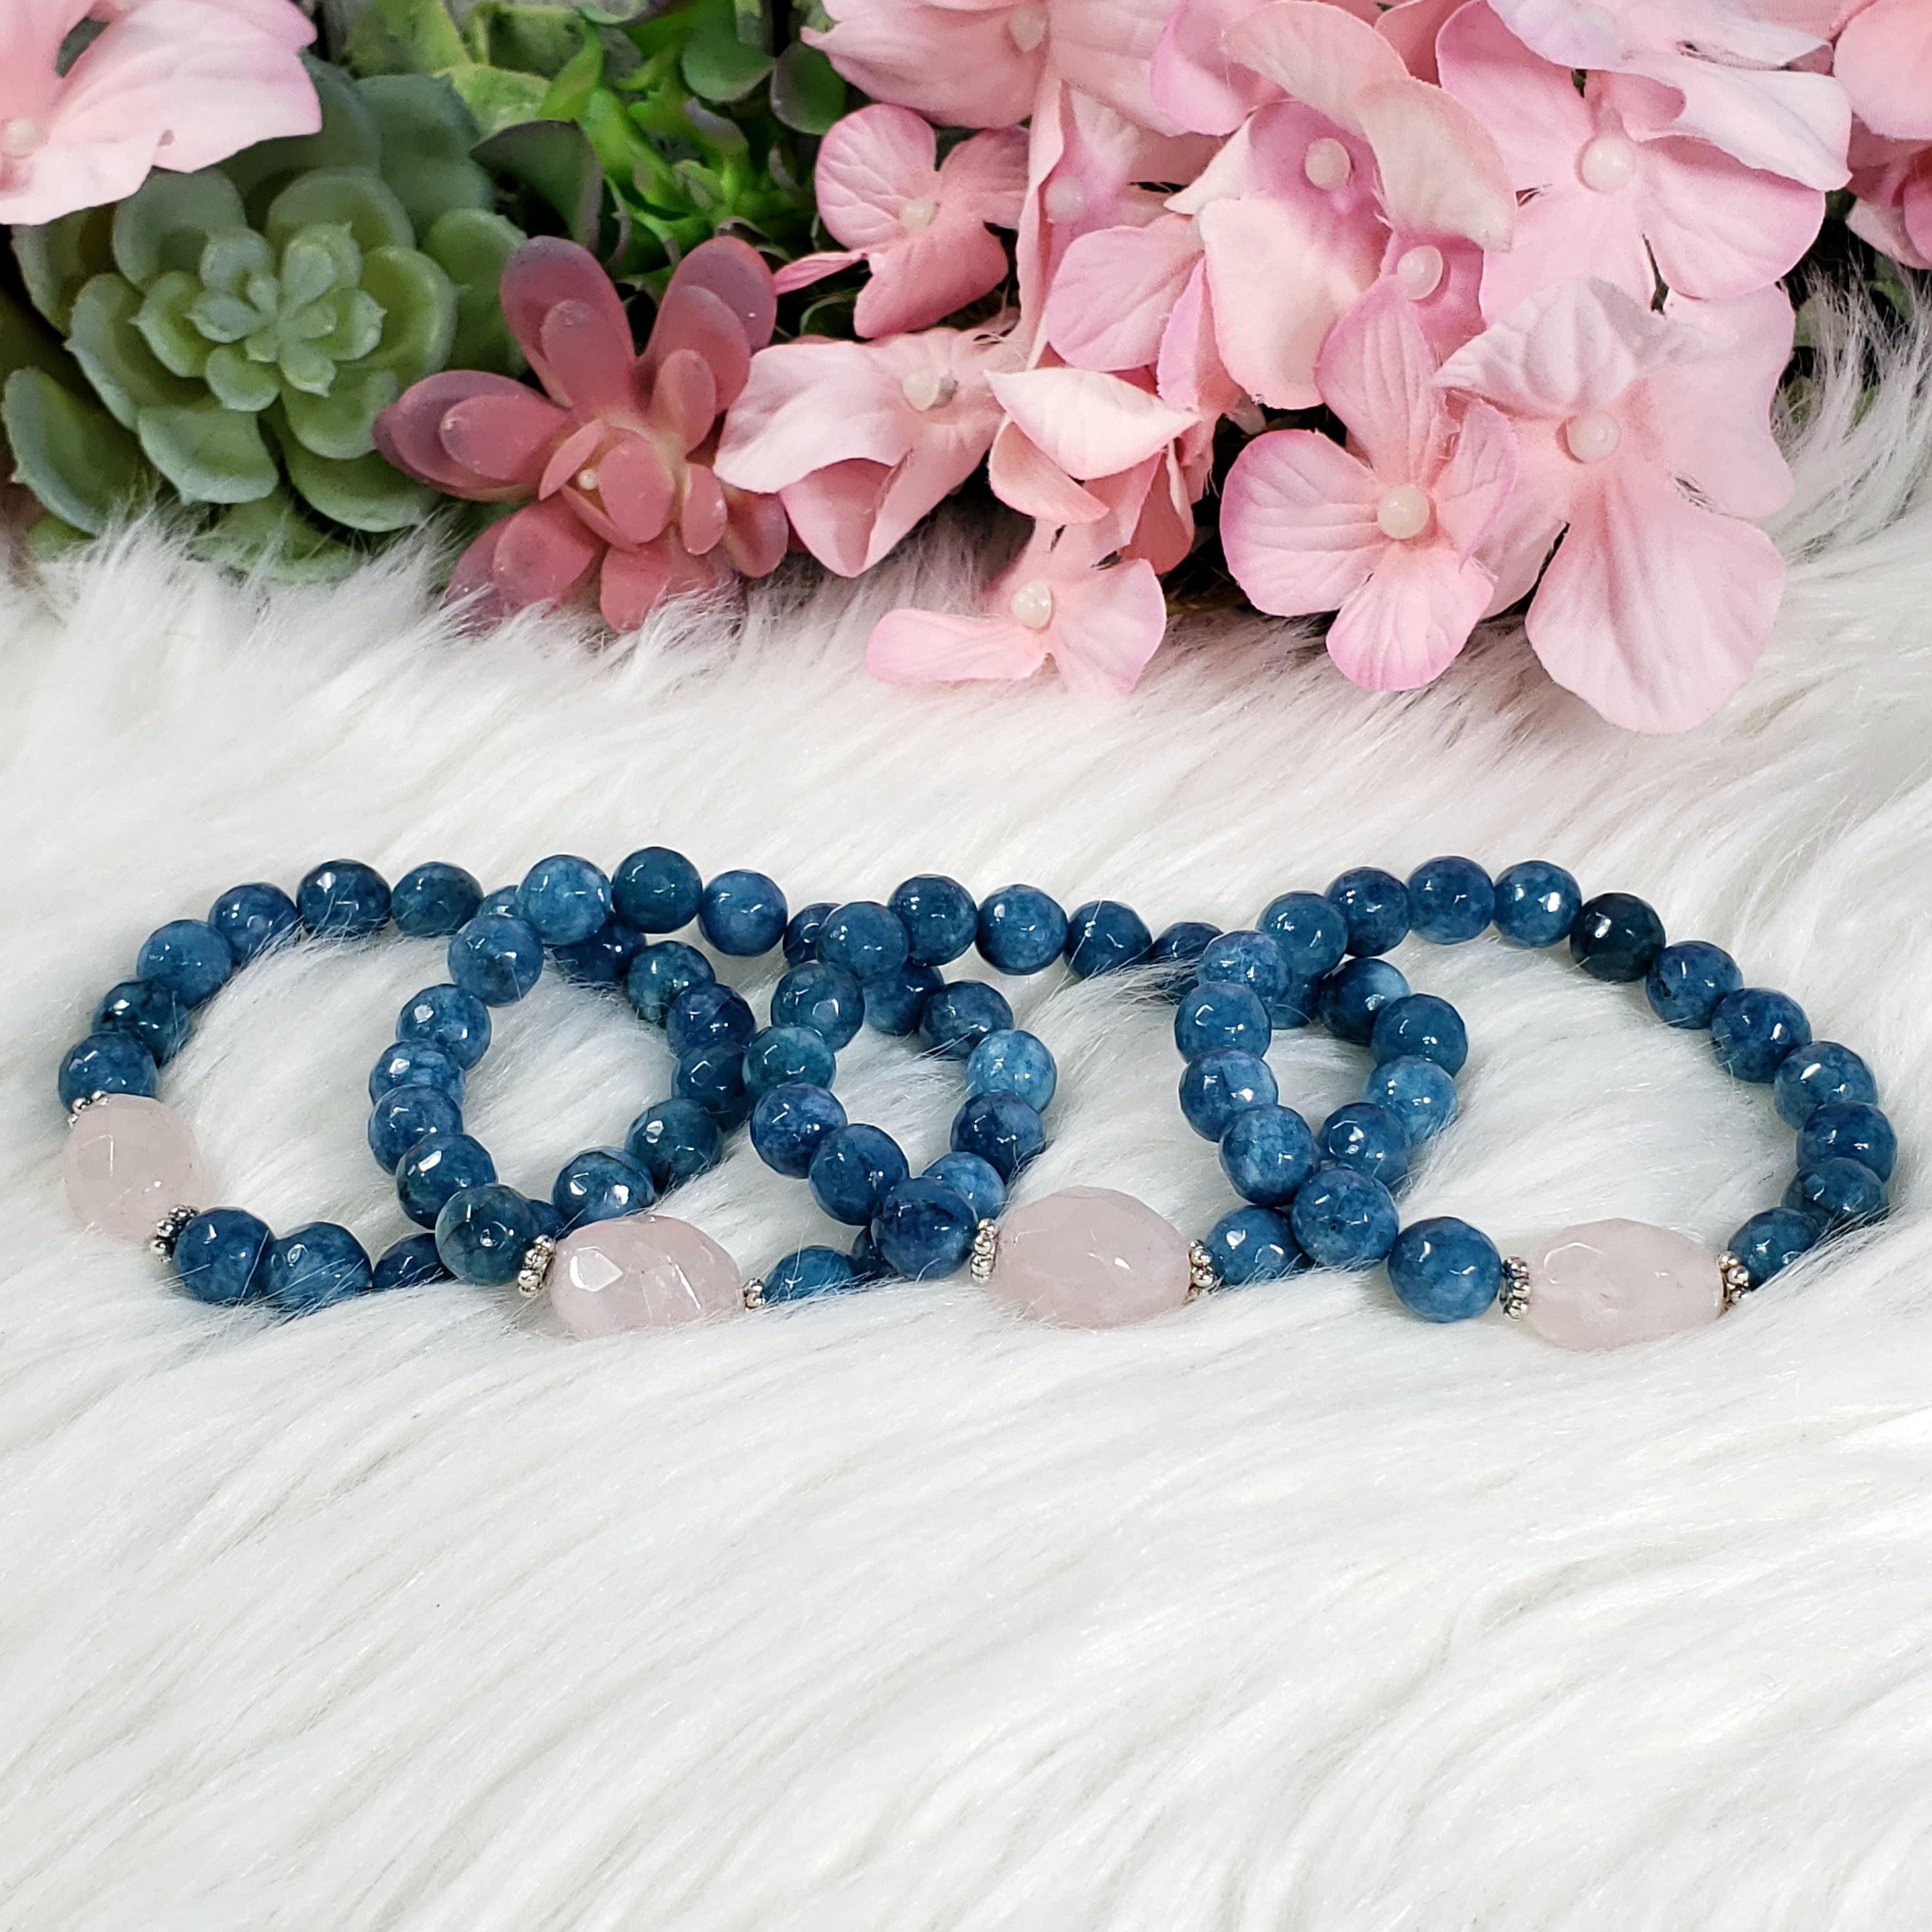 Buy Energy Strings Heart Rose Quartz Crystal Bracelet Online